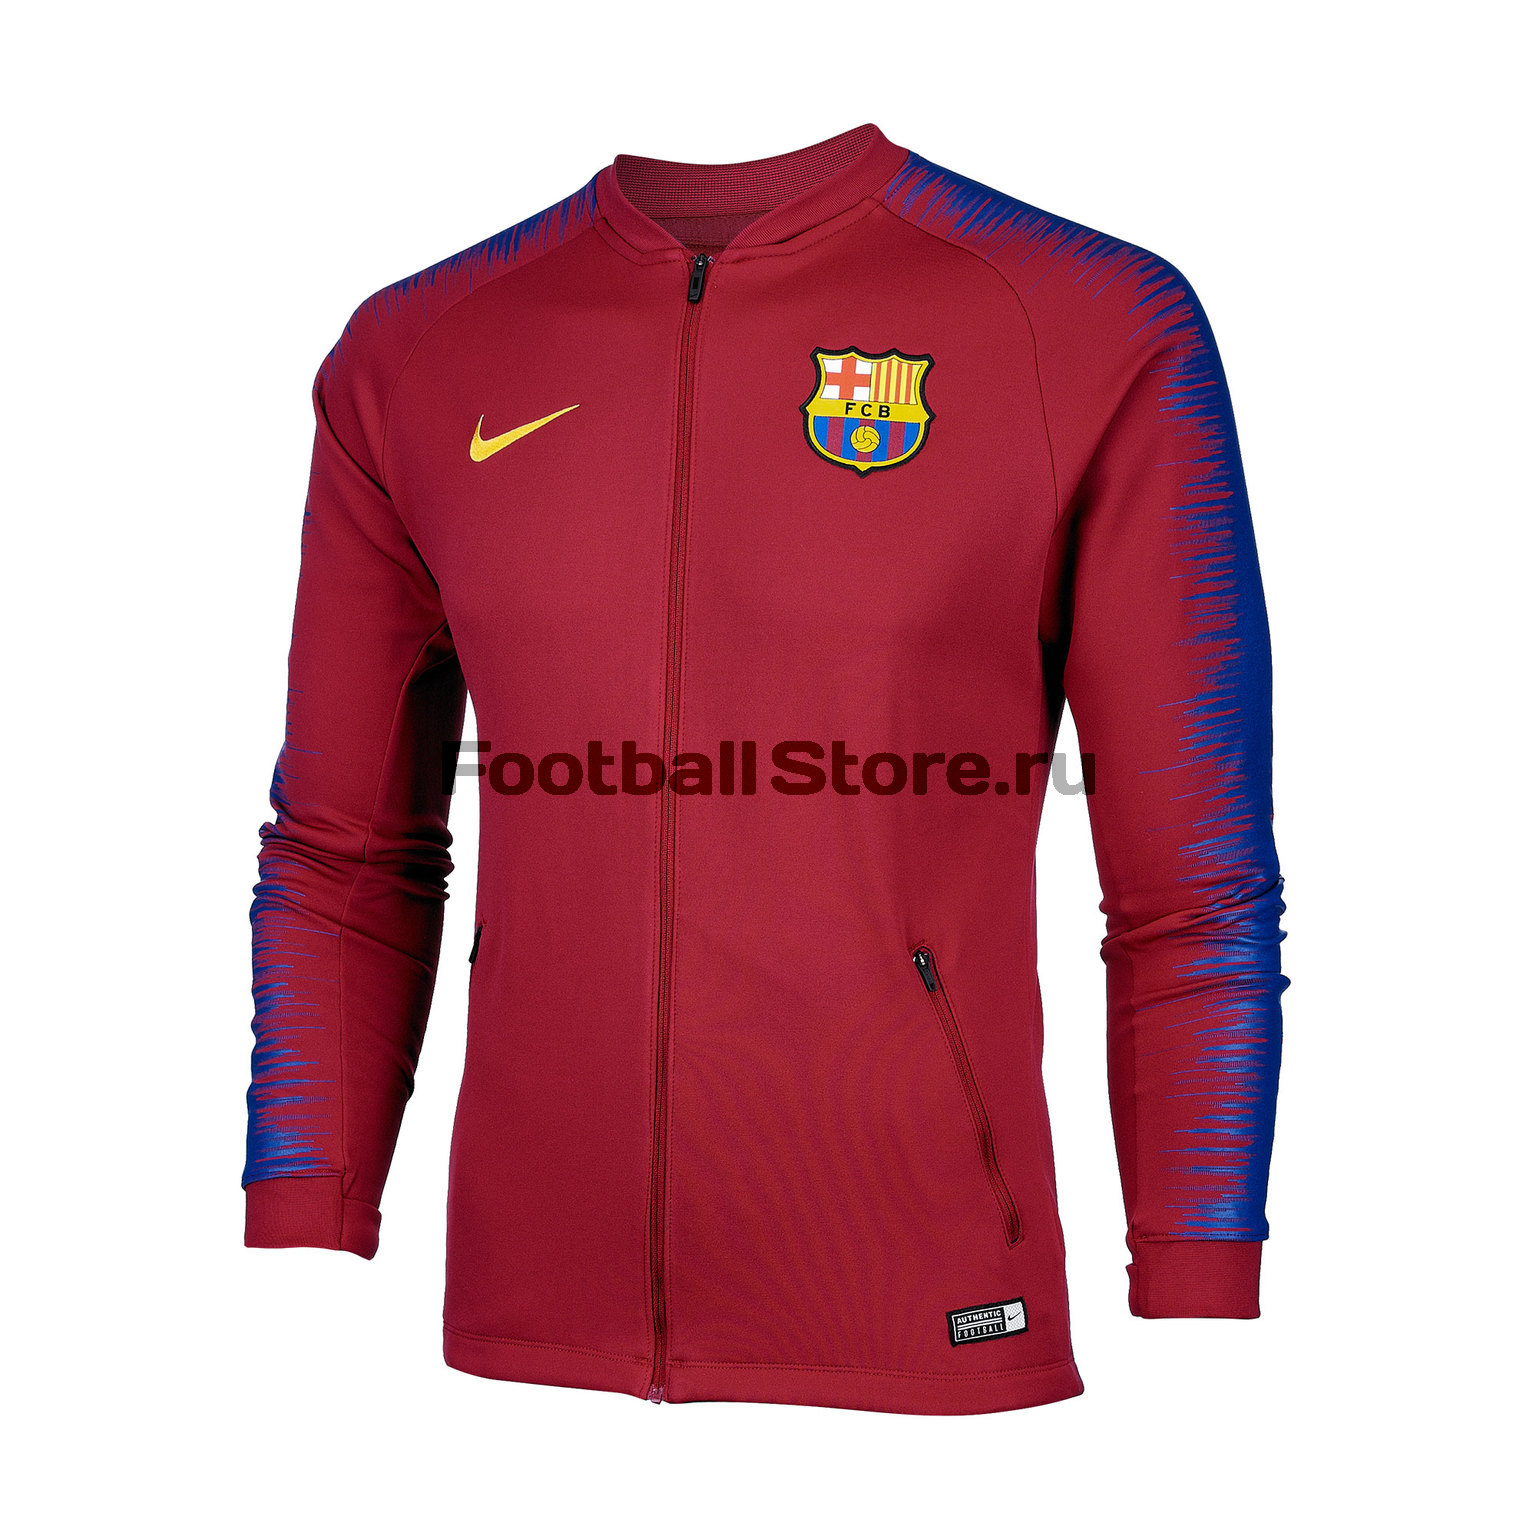 Олимпийка Nike FC Barcelona JKT 894361-620